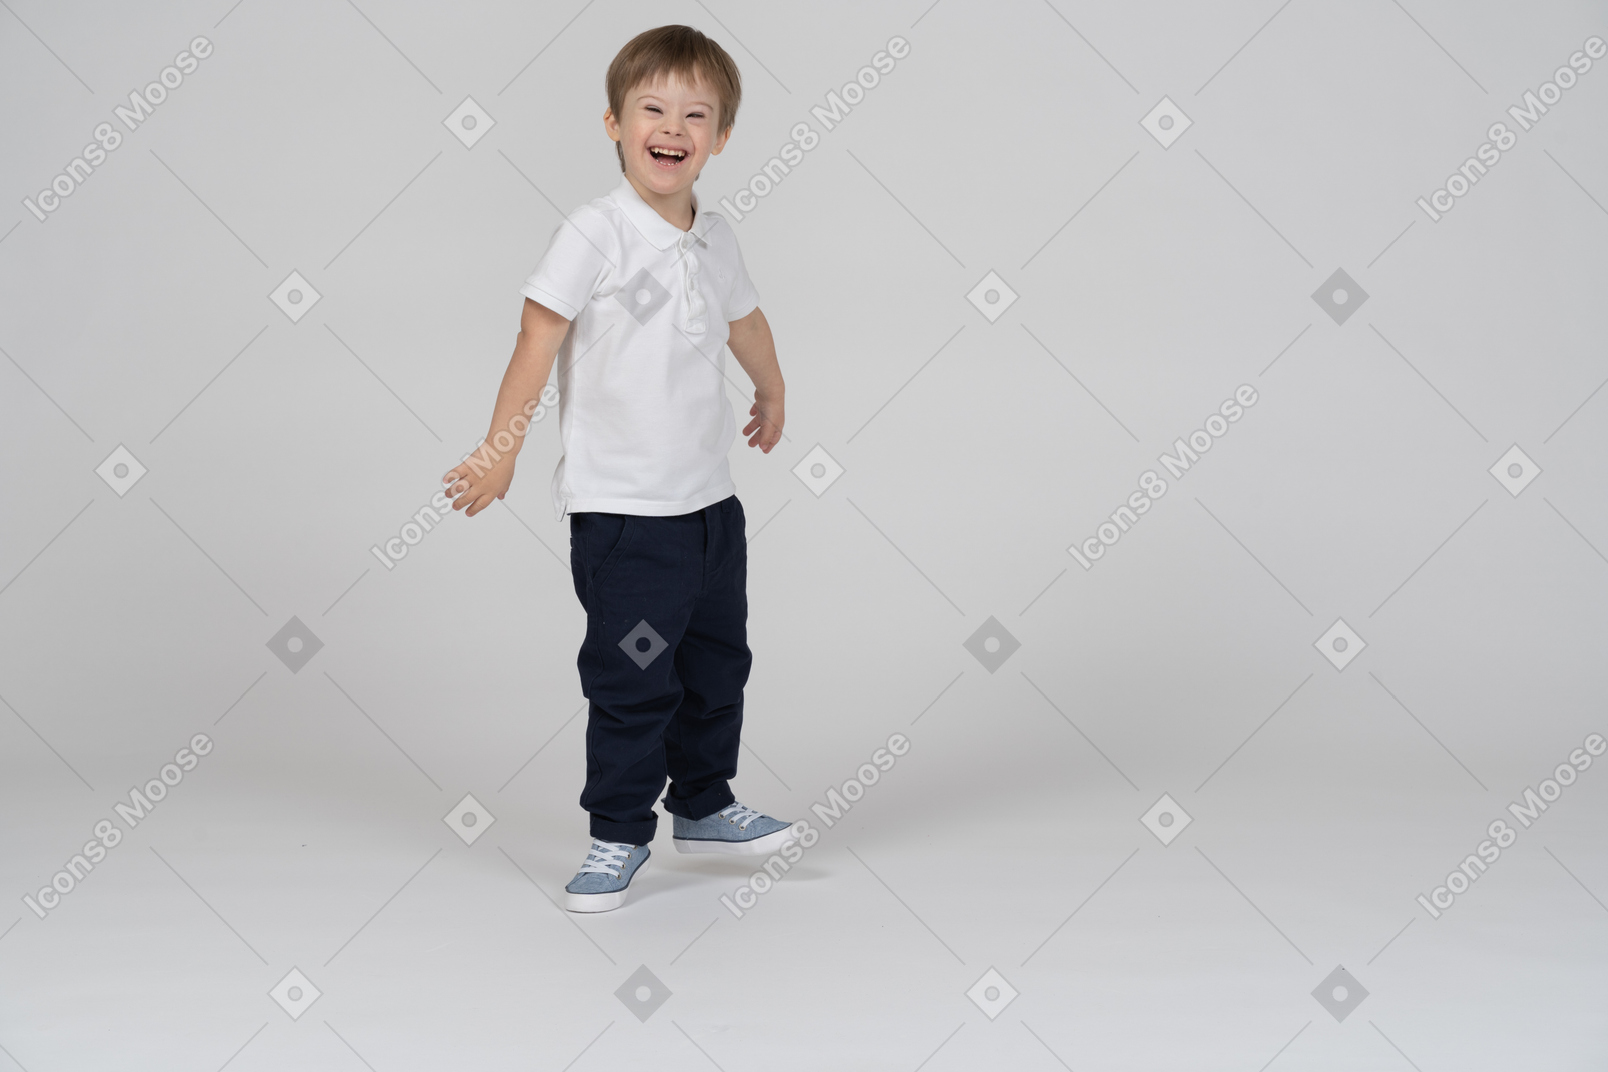 Vista de tres cuartos de un niño de pie y riendo alegremente